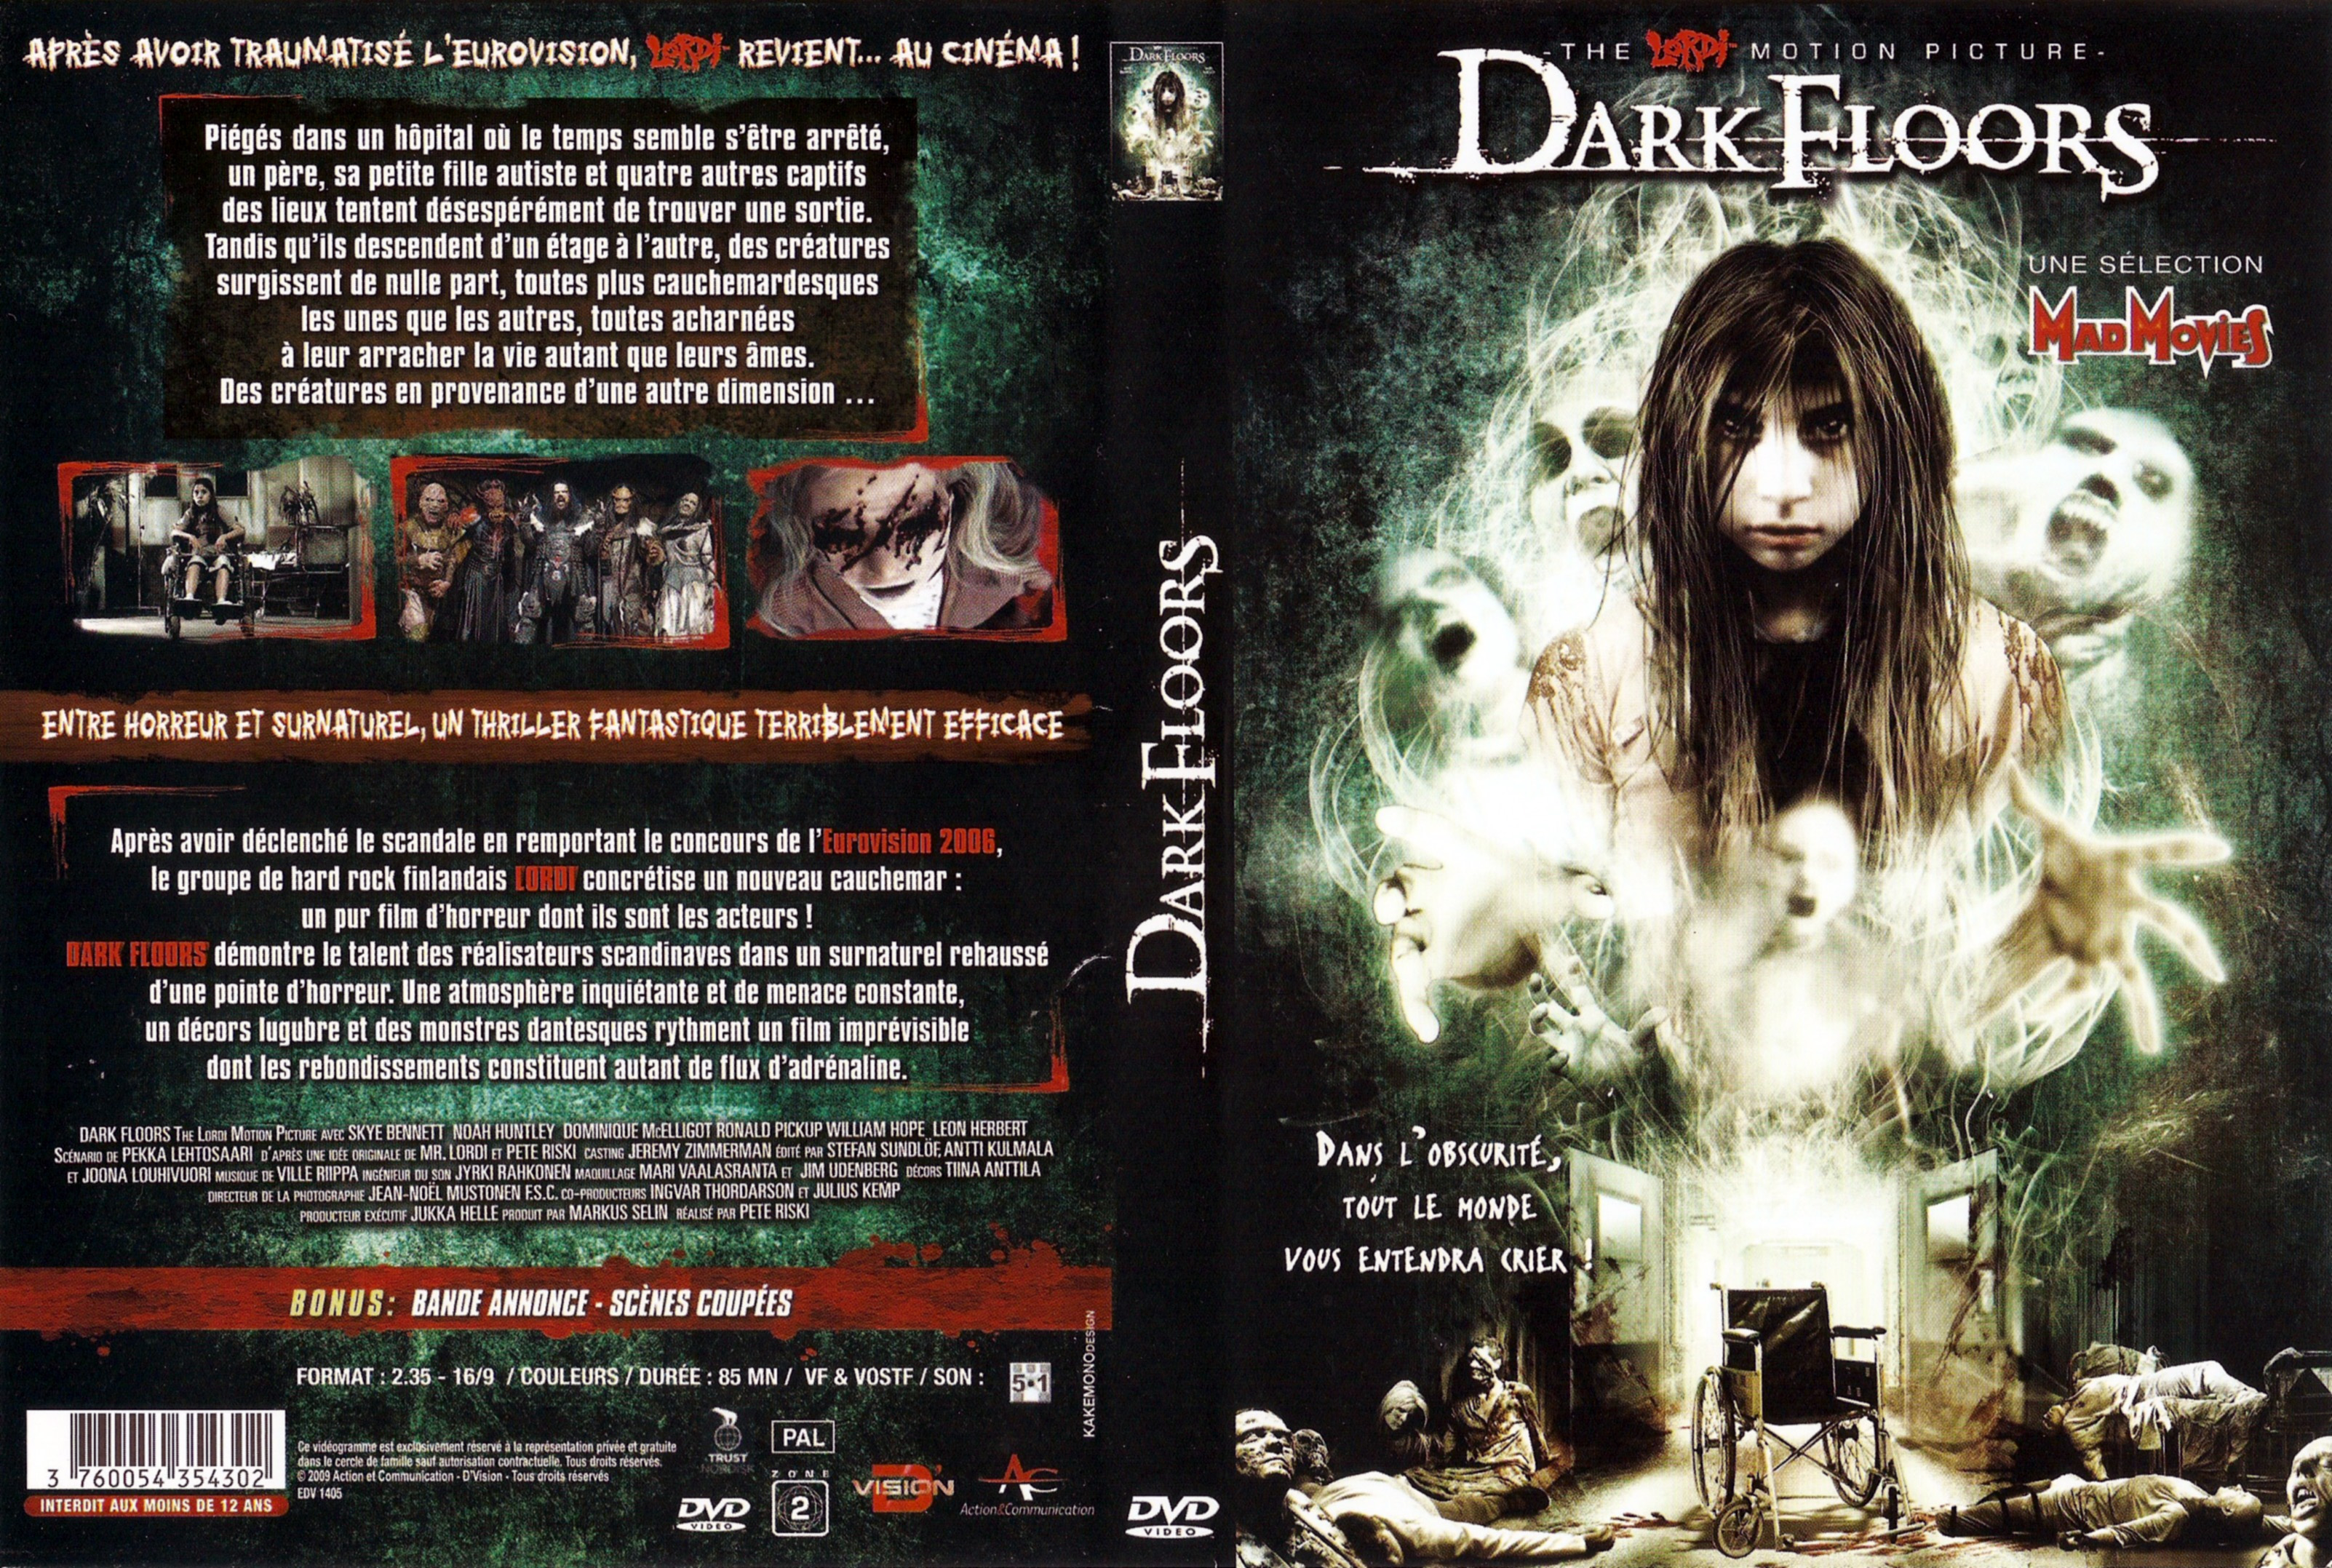 Jaquette DVD Dark floors